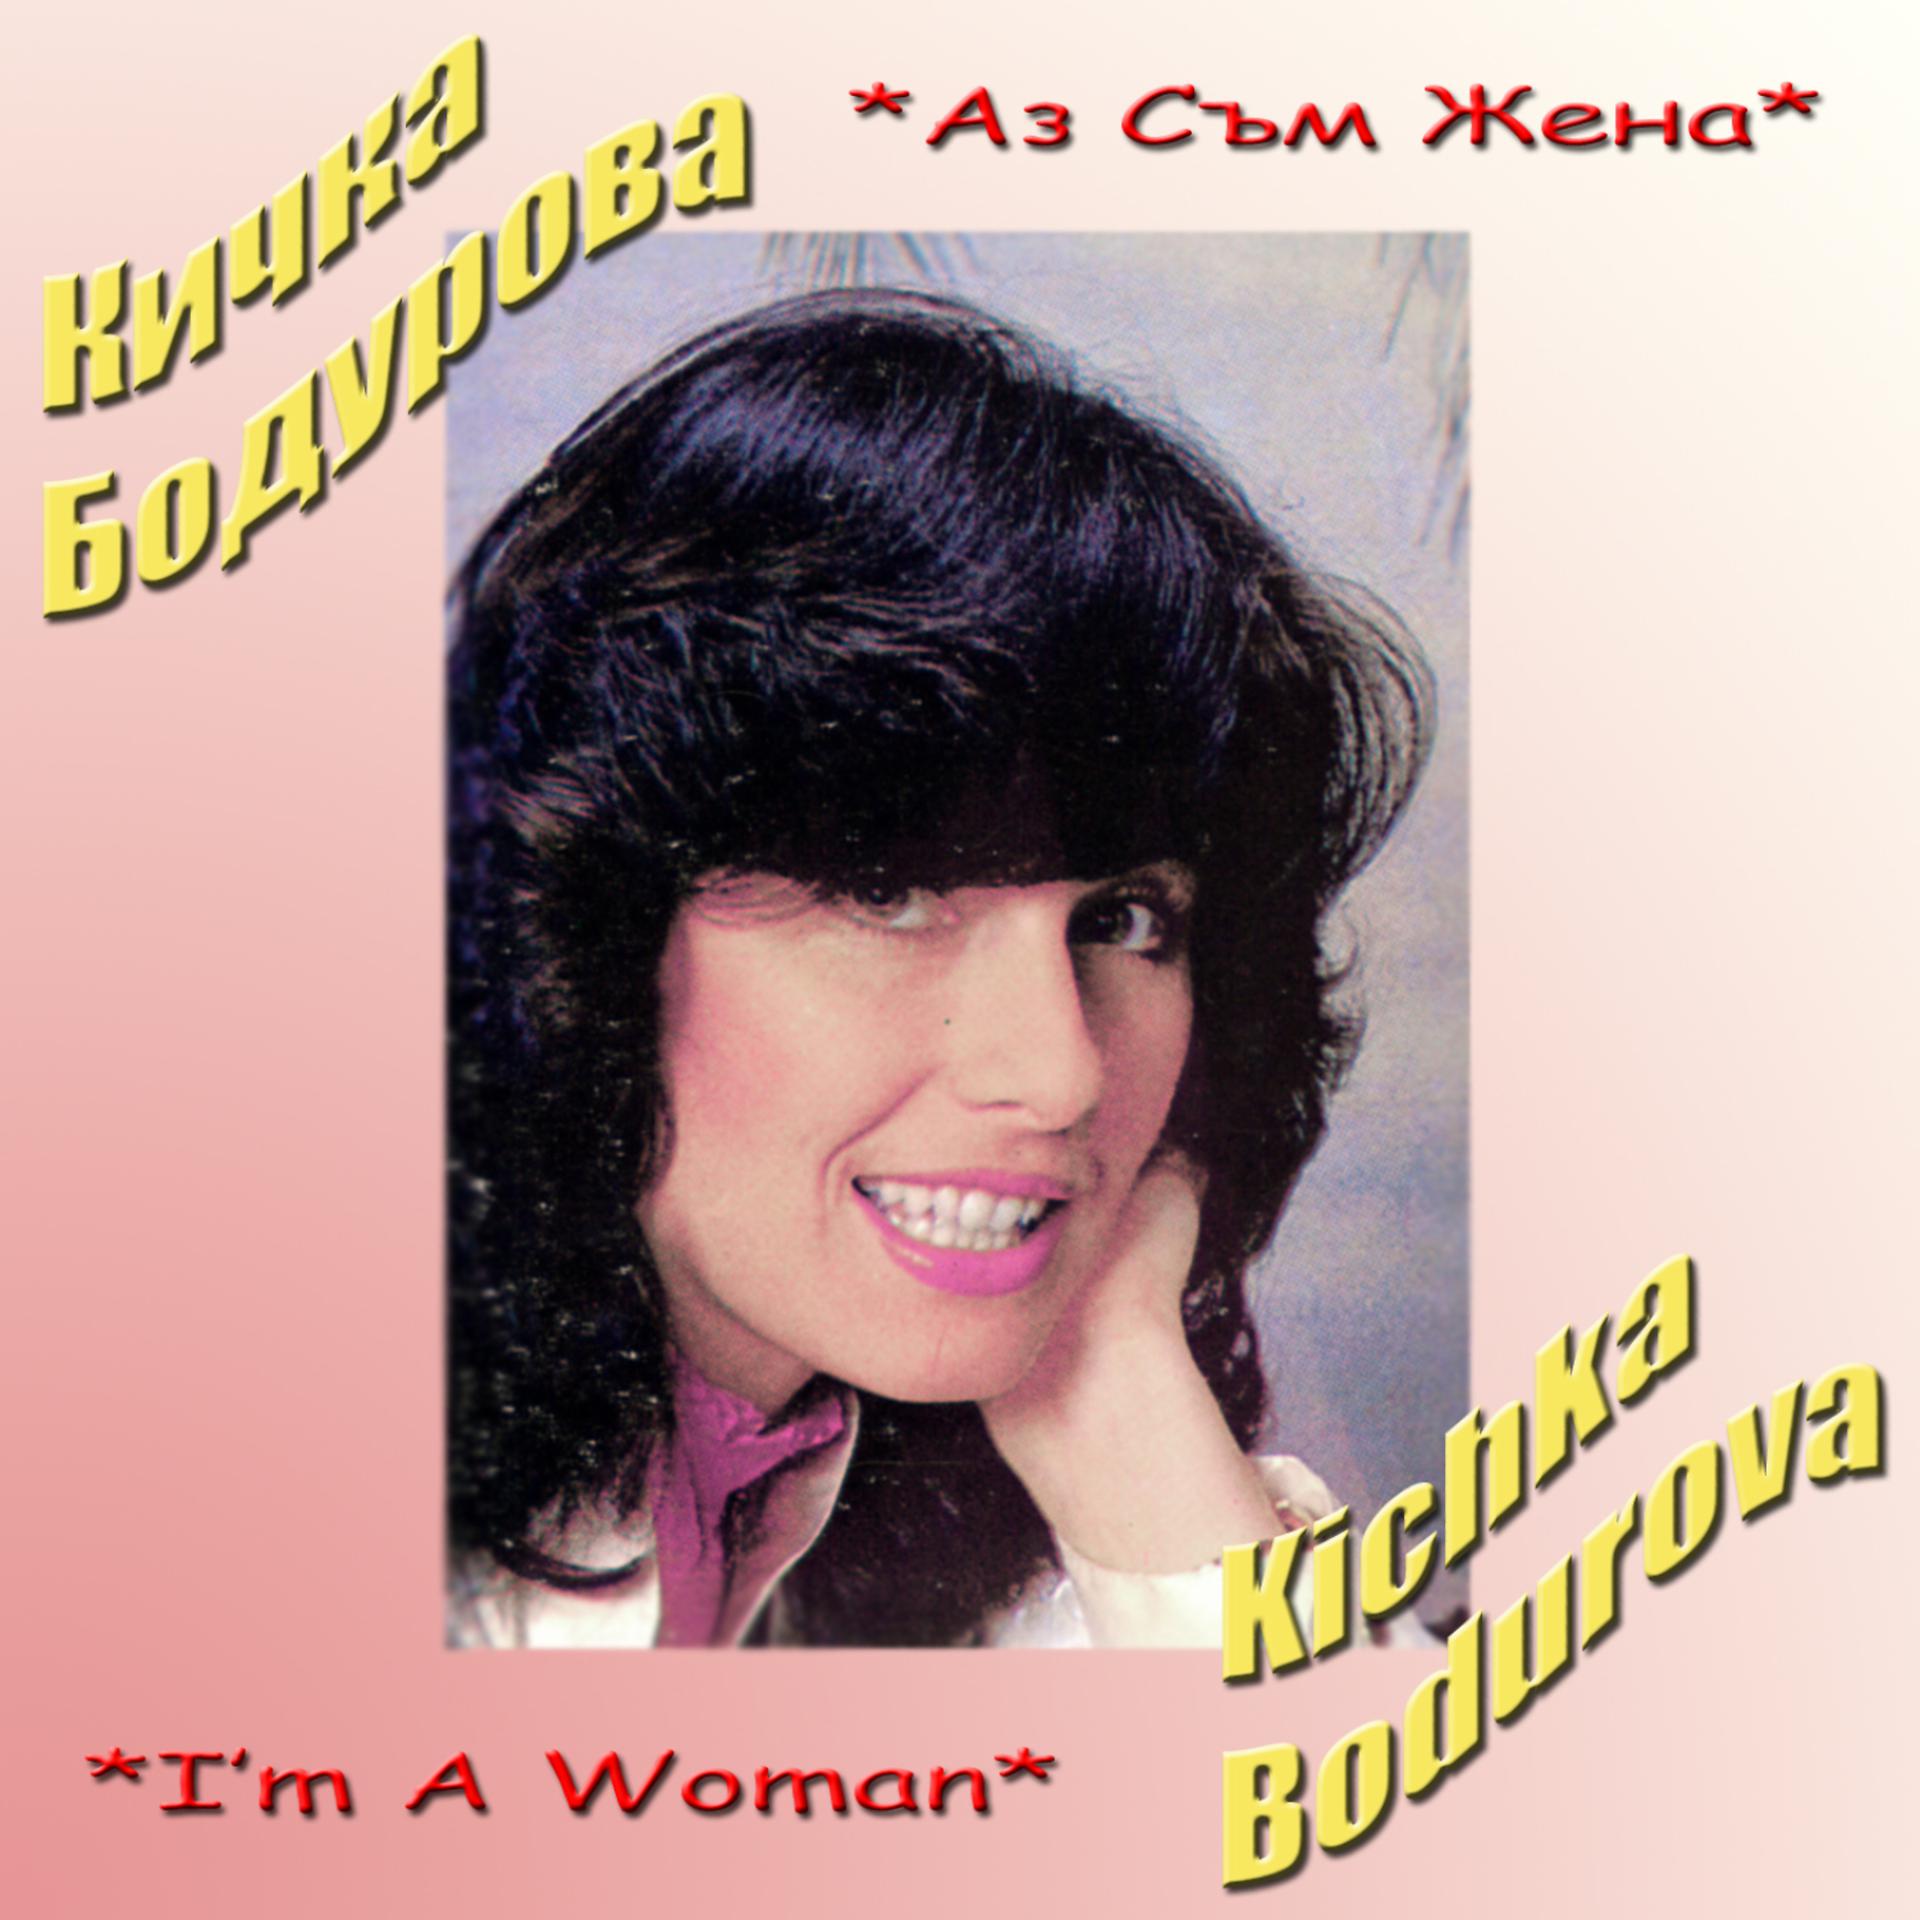 Привет жене песня. Kichka Bodurova. Певица блюз Италия большой кичкой.